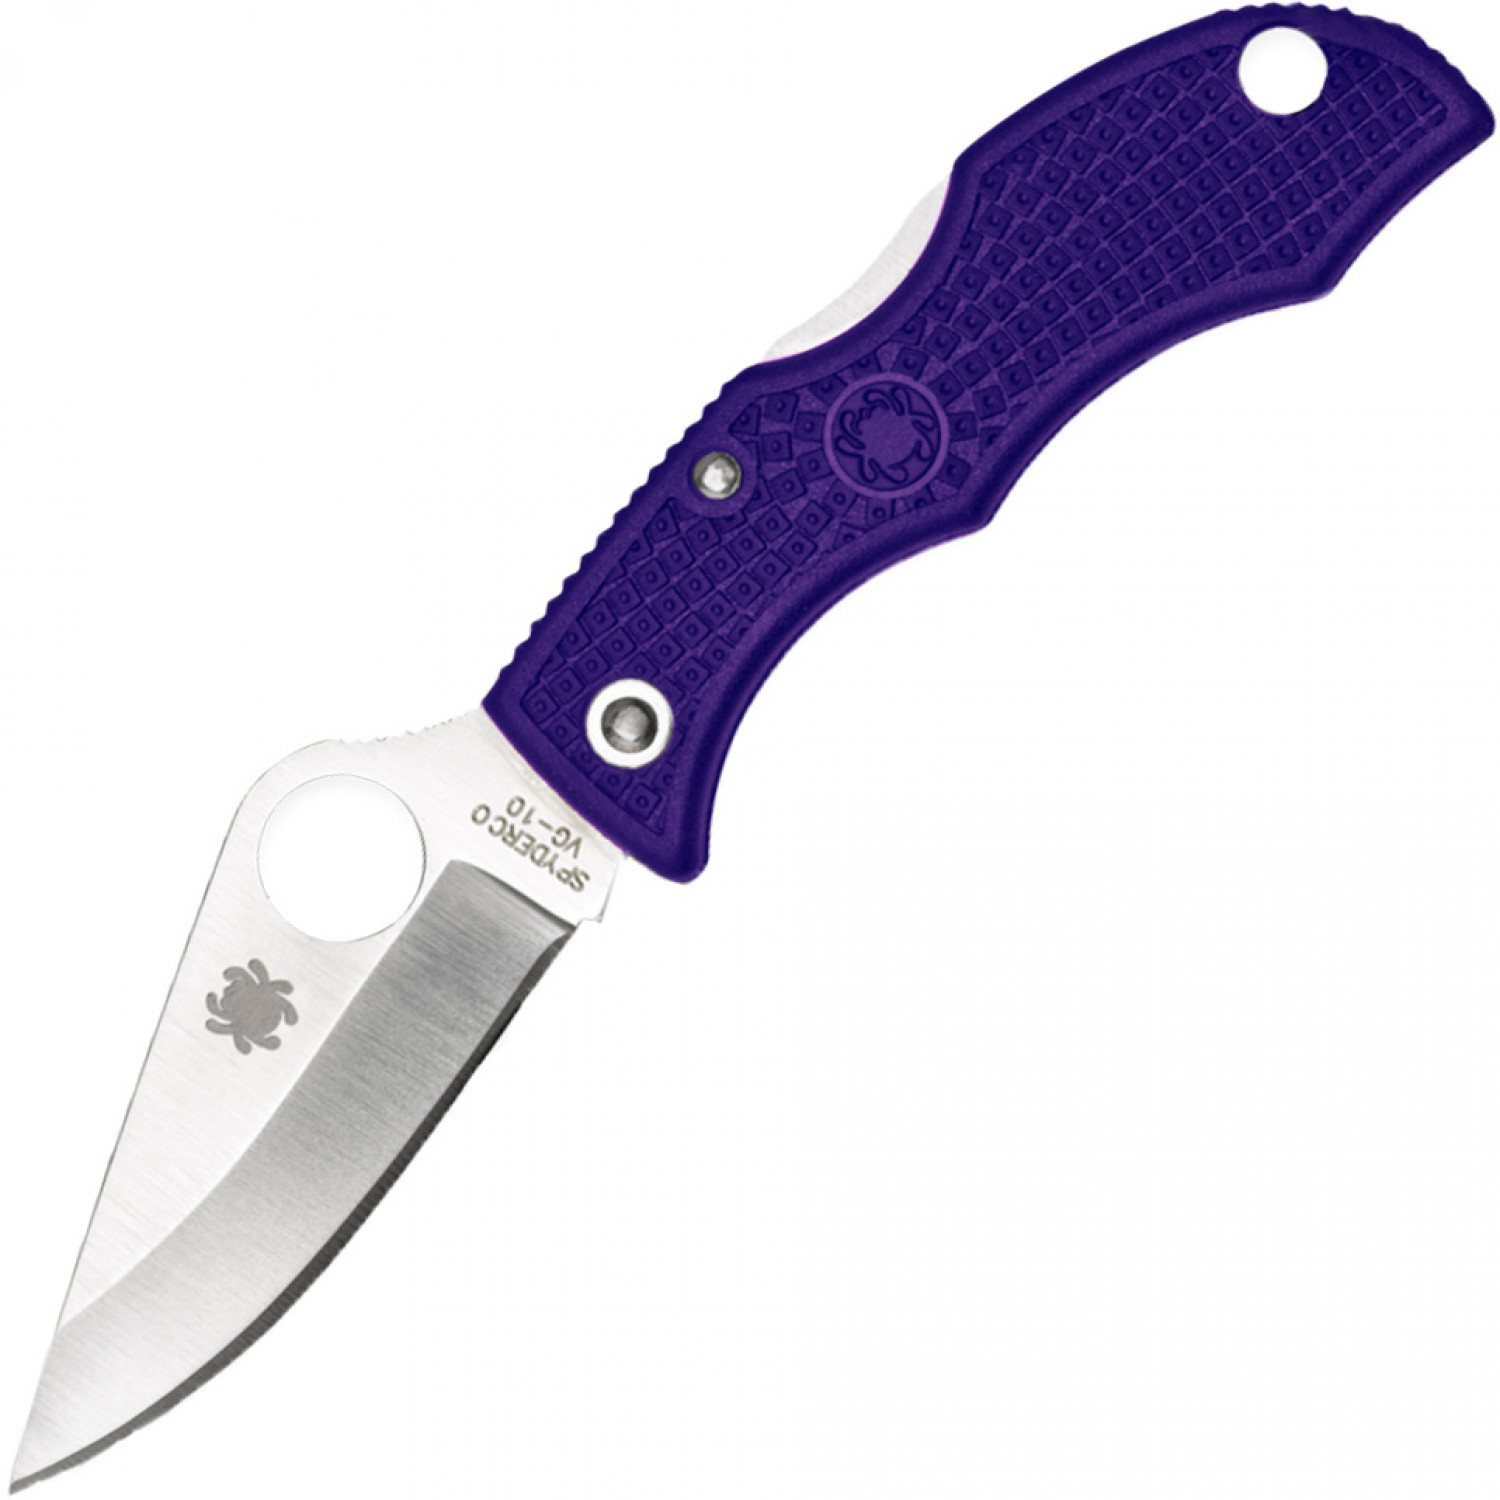 Нож складной Ladybug 3 - Spyderco LPRP3, сталь VG-10 Satin Plain, рукоять термопластик FRN, фиолетовый